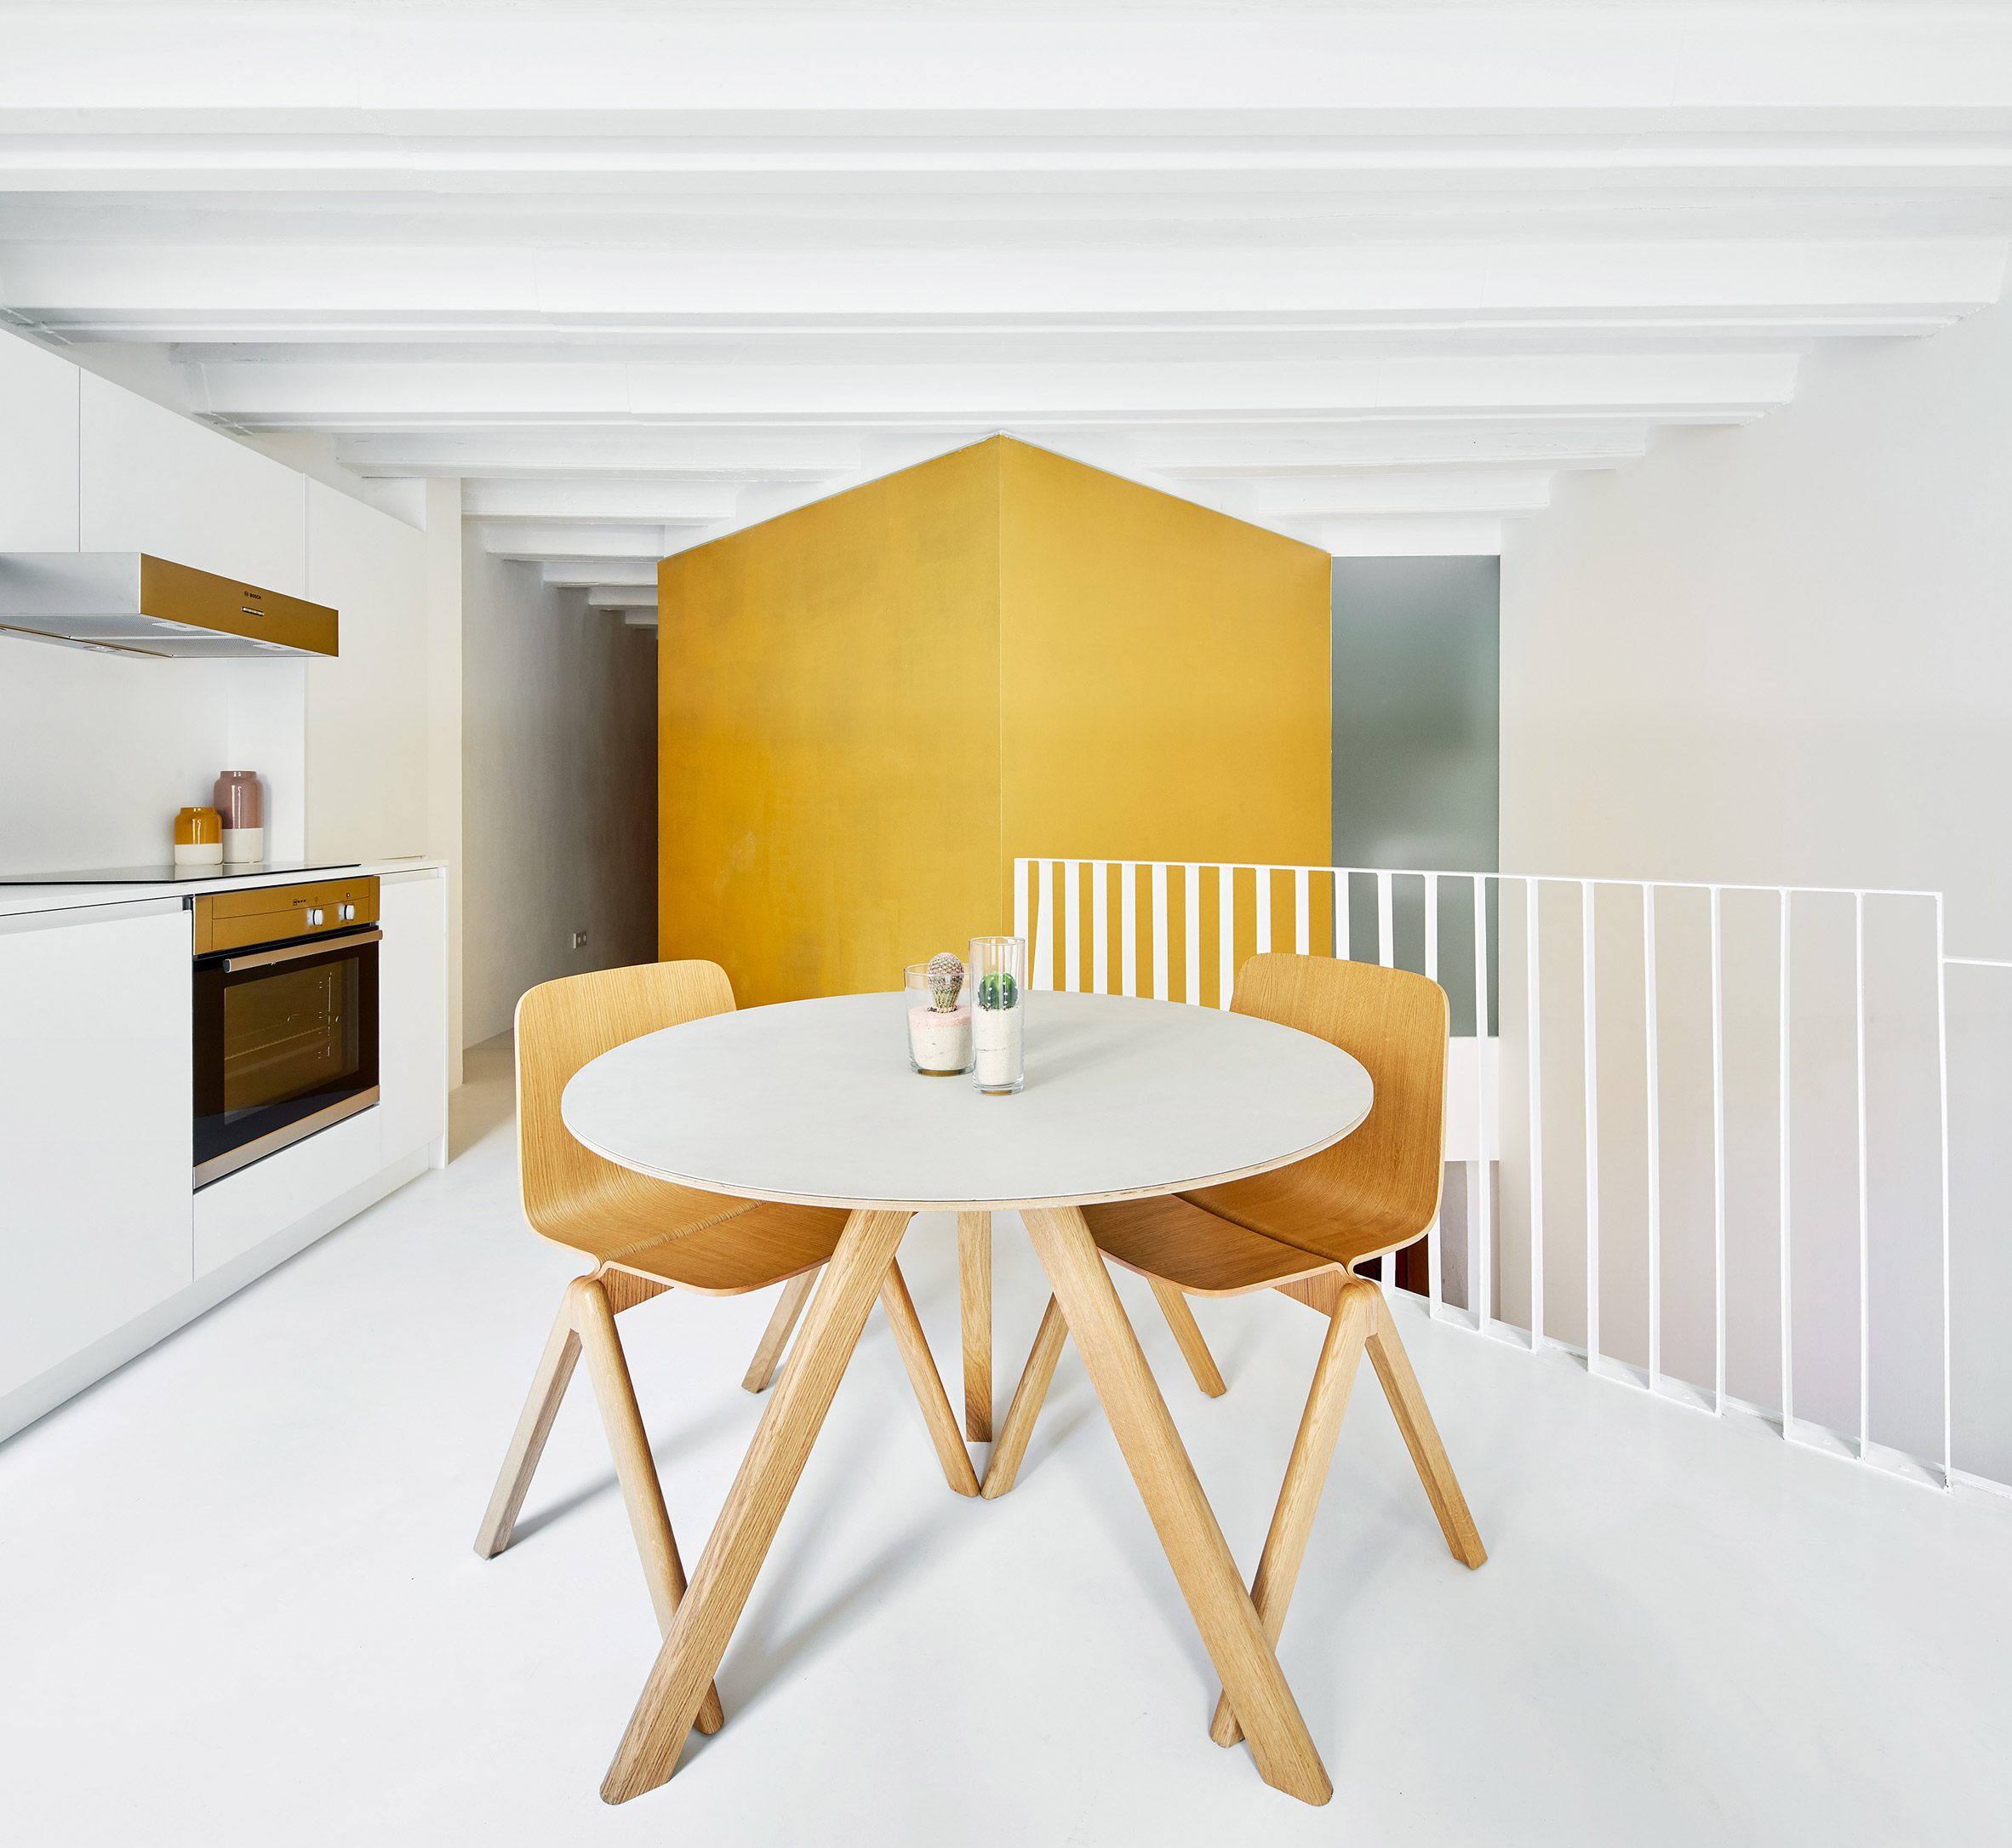 Raúl Sánchez Architects creates duplex apartment with golden cubes at its centre